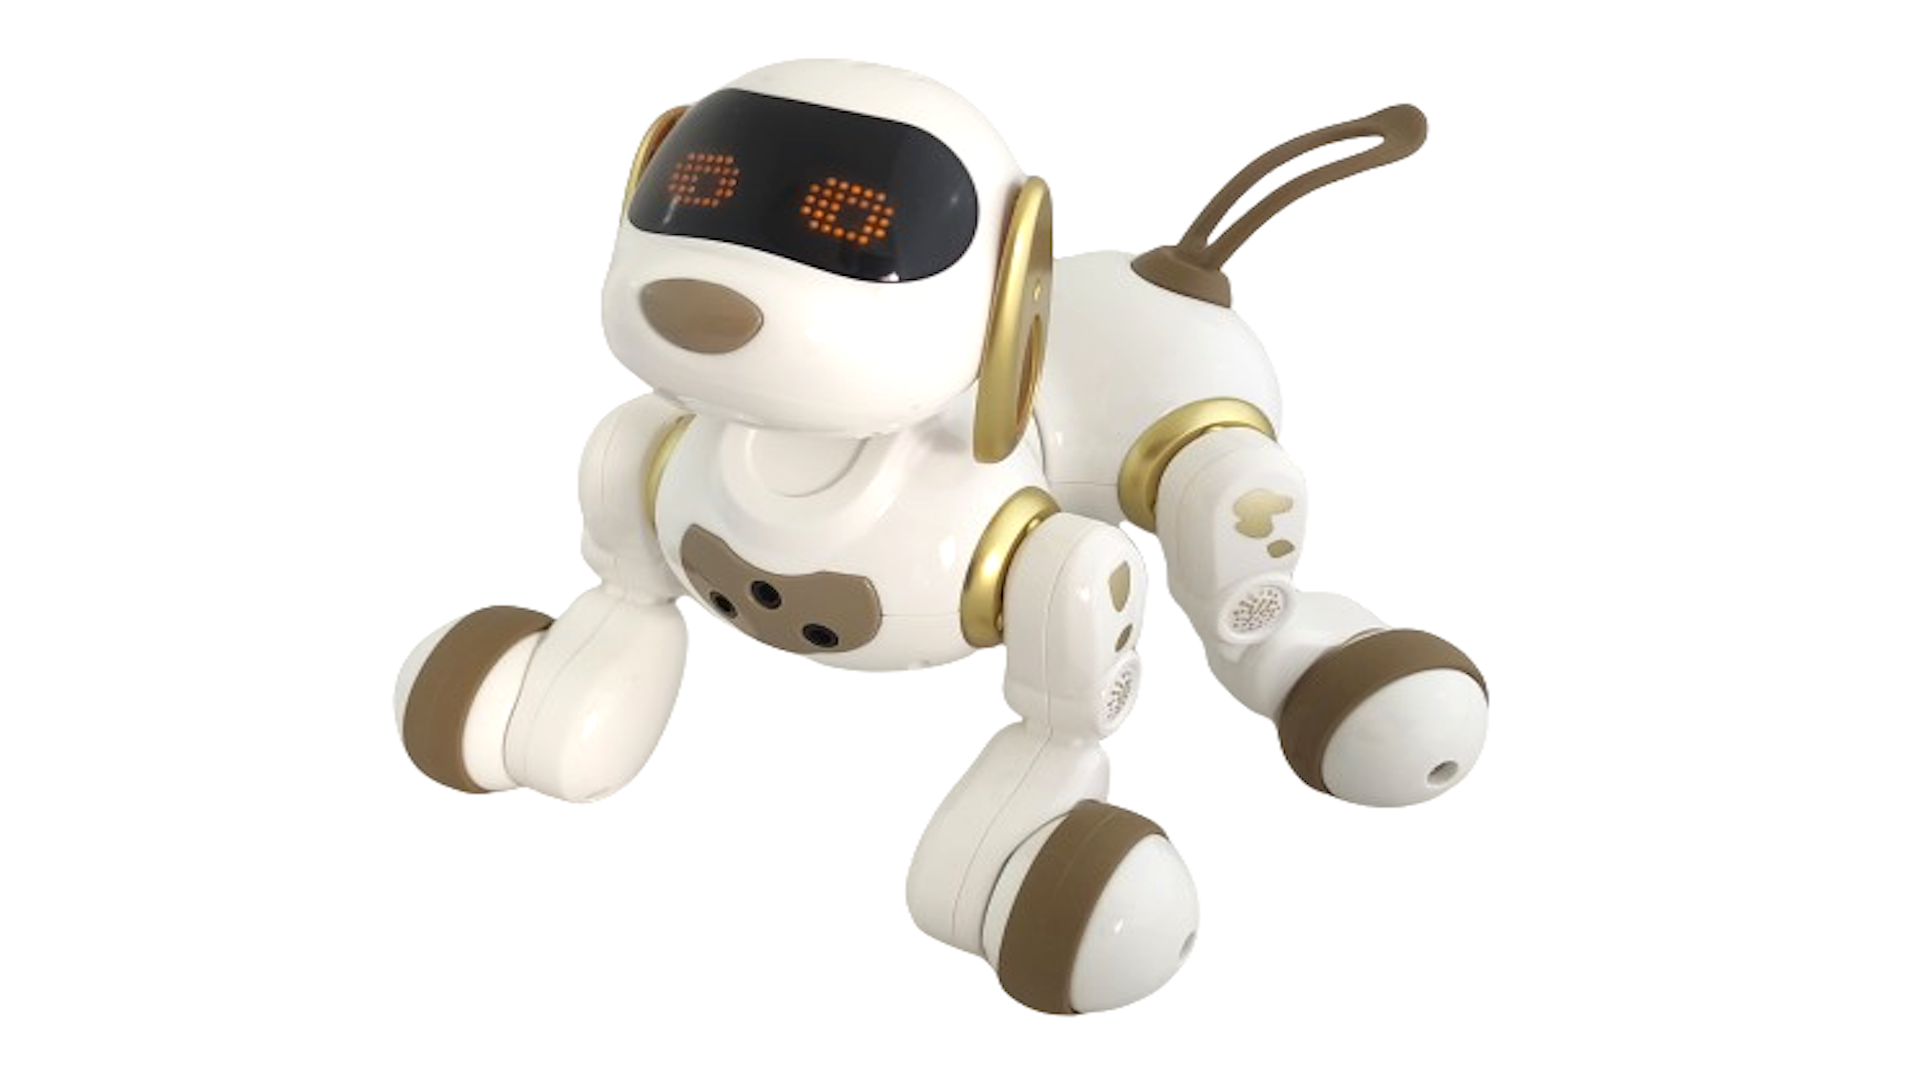 Интерактивная радиоуправляемая собака робот Smart Robot Dog Dexterity AMWELL AW-18011-GOLD робот пылесос panda i7 gold